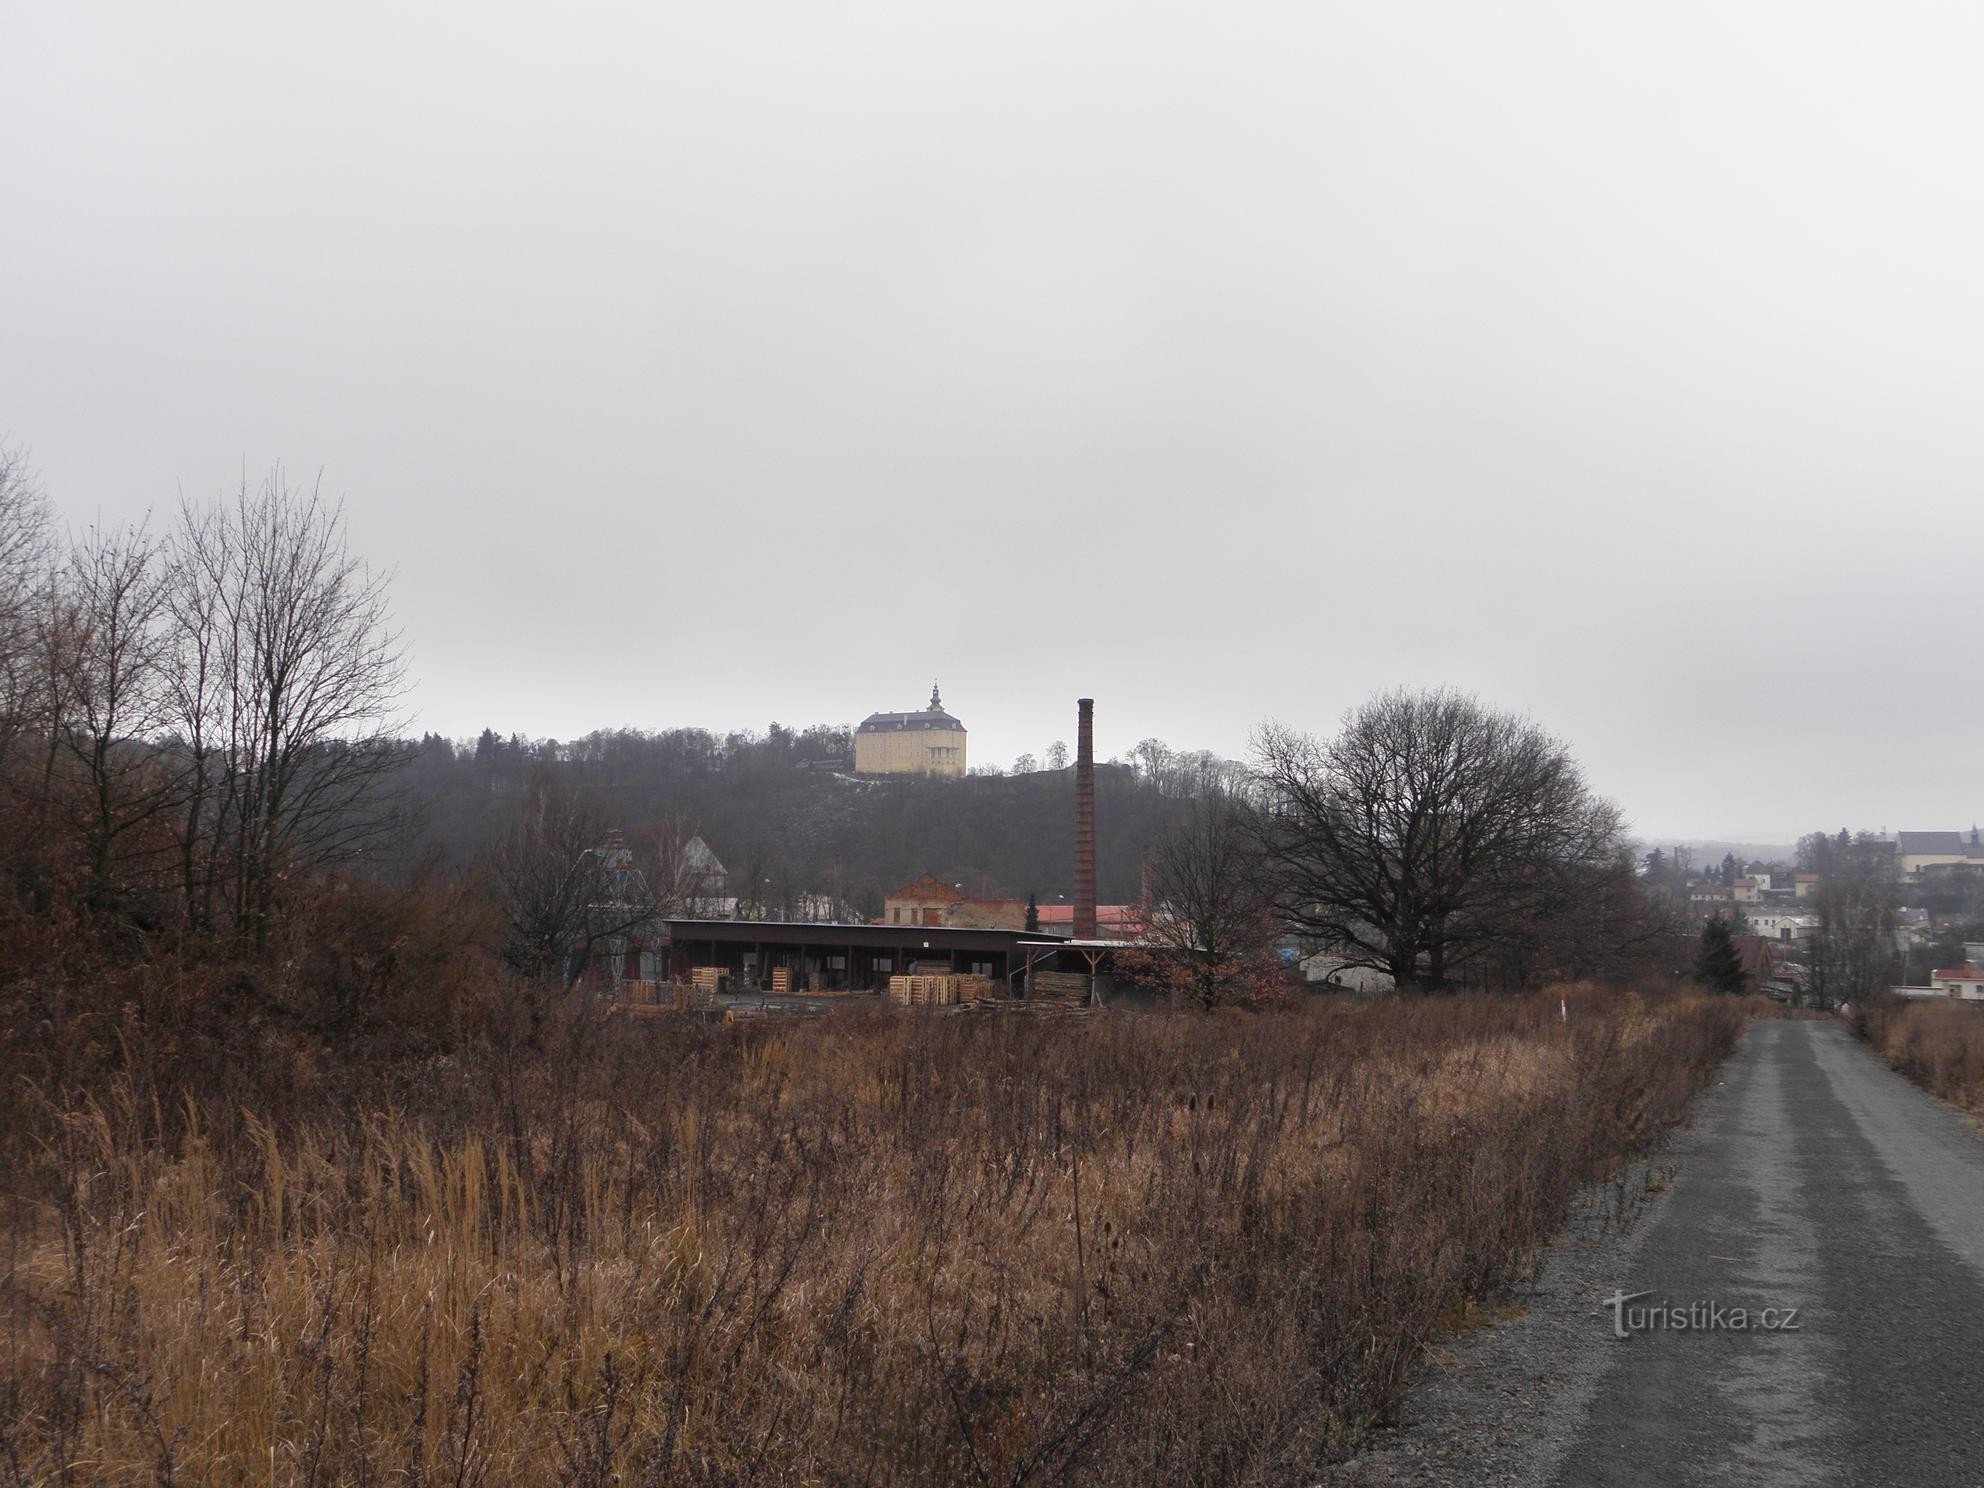 Udsigt over Fulnec-slottet - 1.1.2012